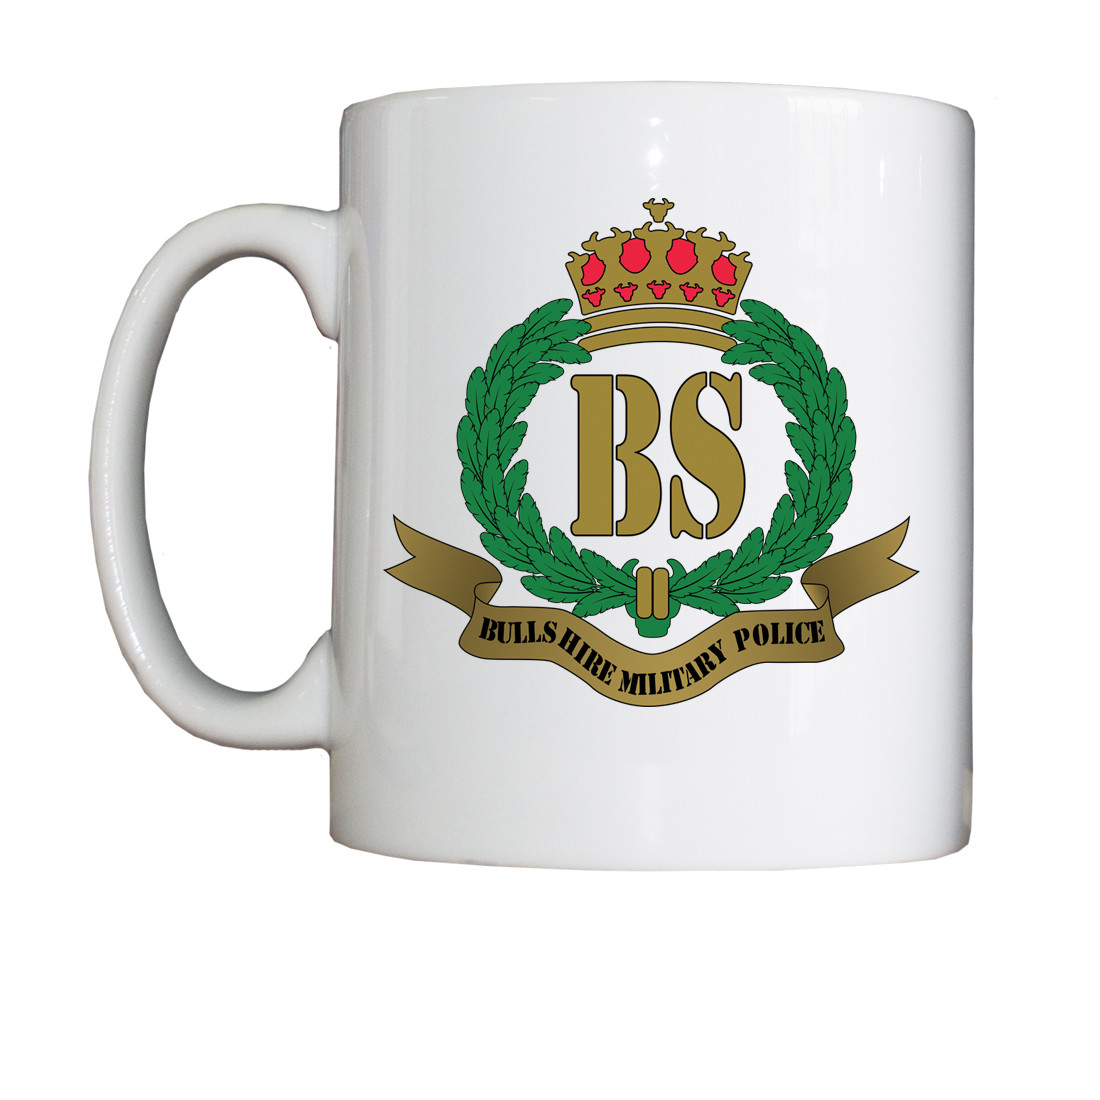 Personalised 'Bullshire Military Police' Drinking Vessel (Mug)